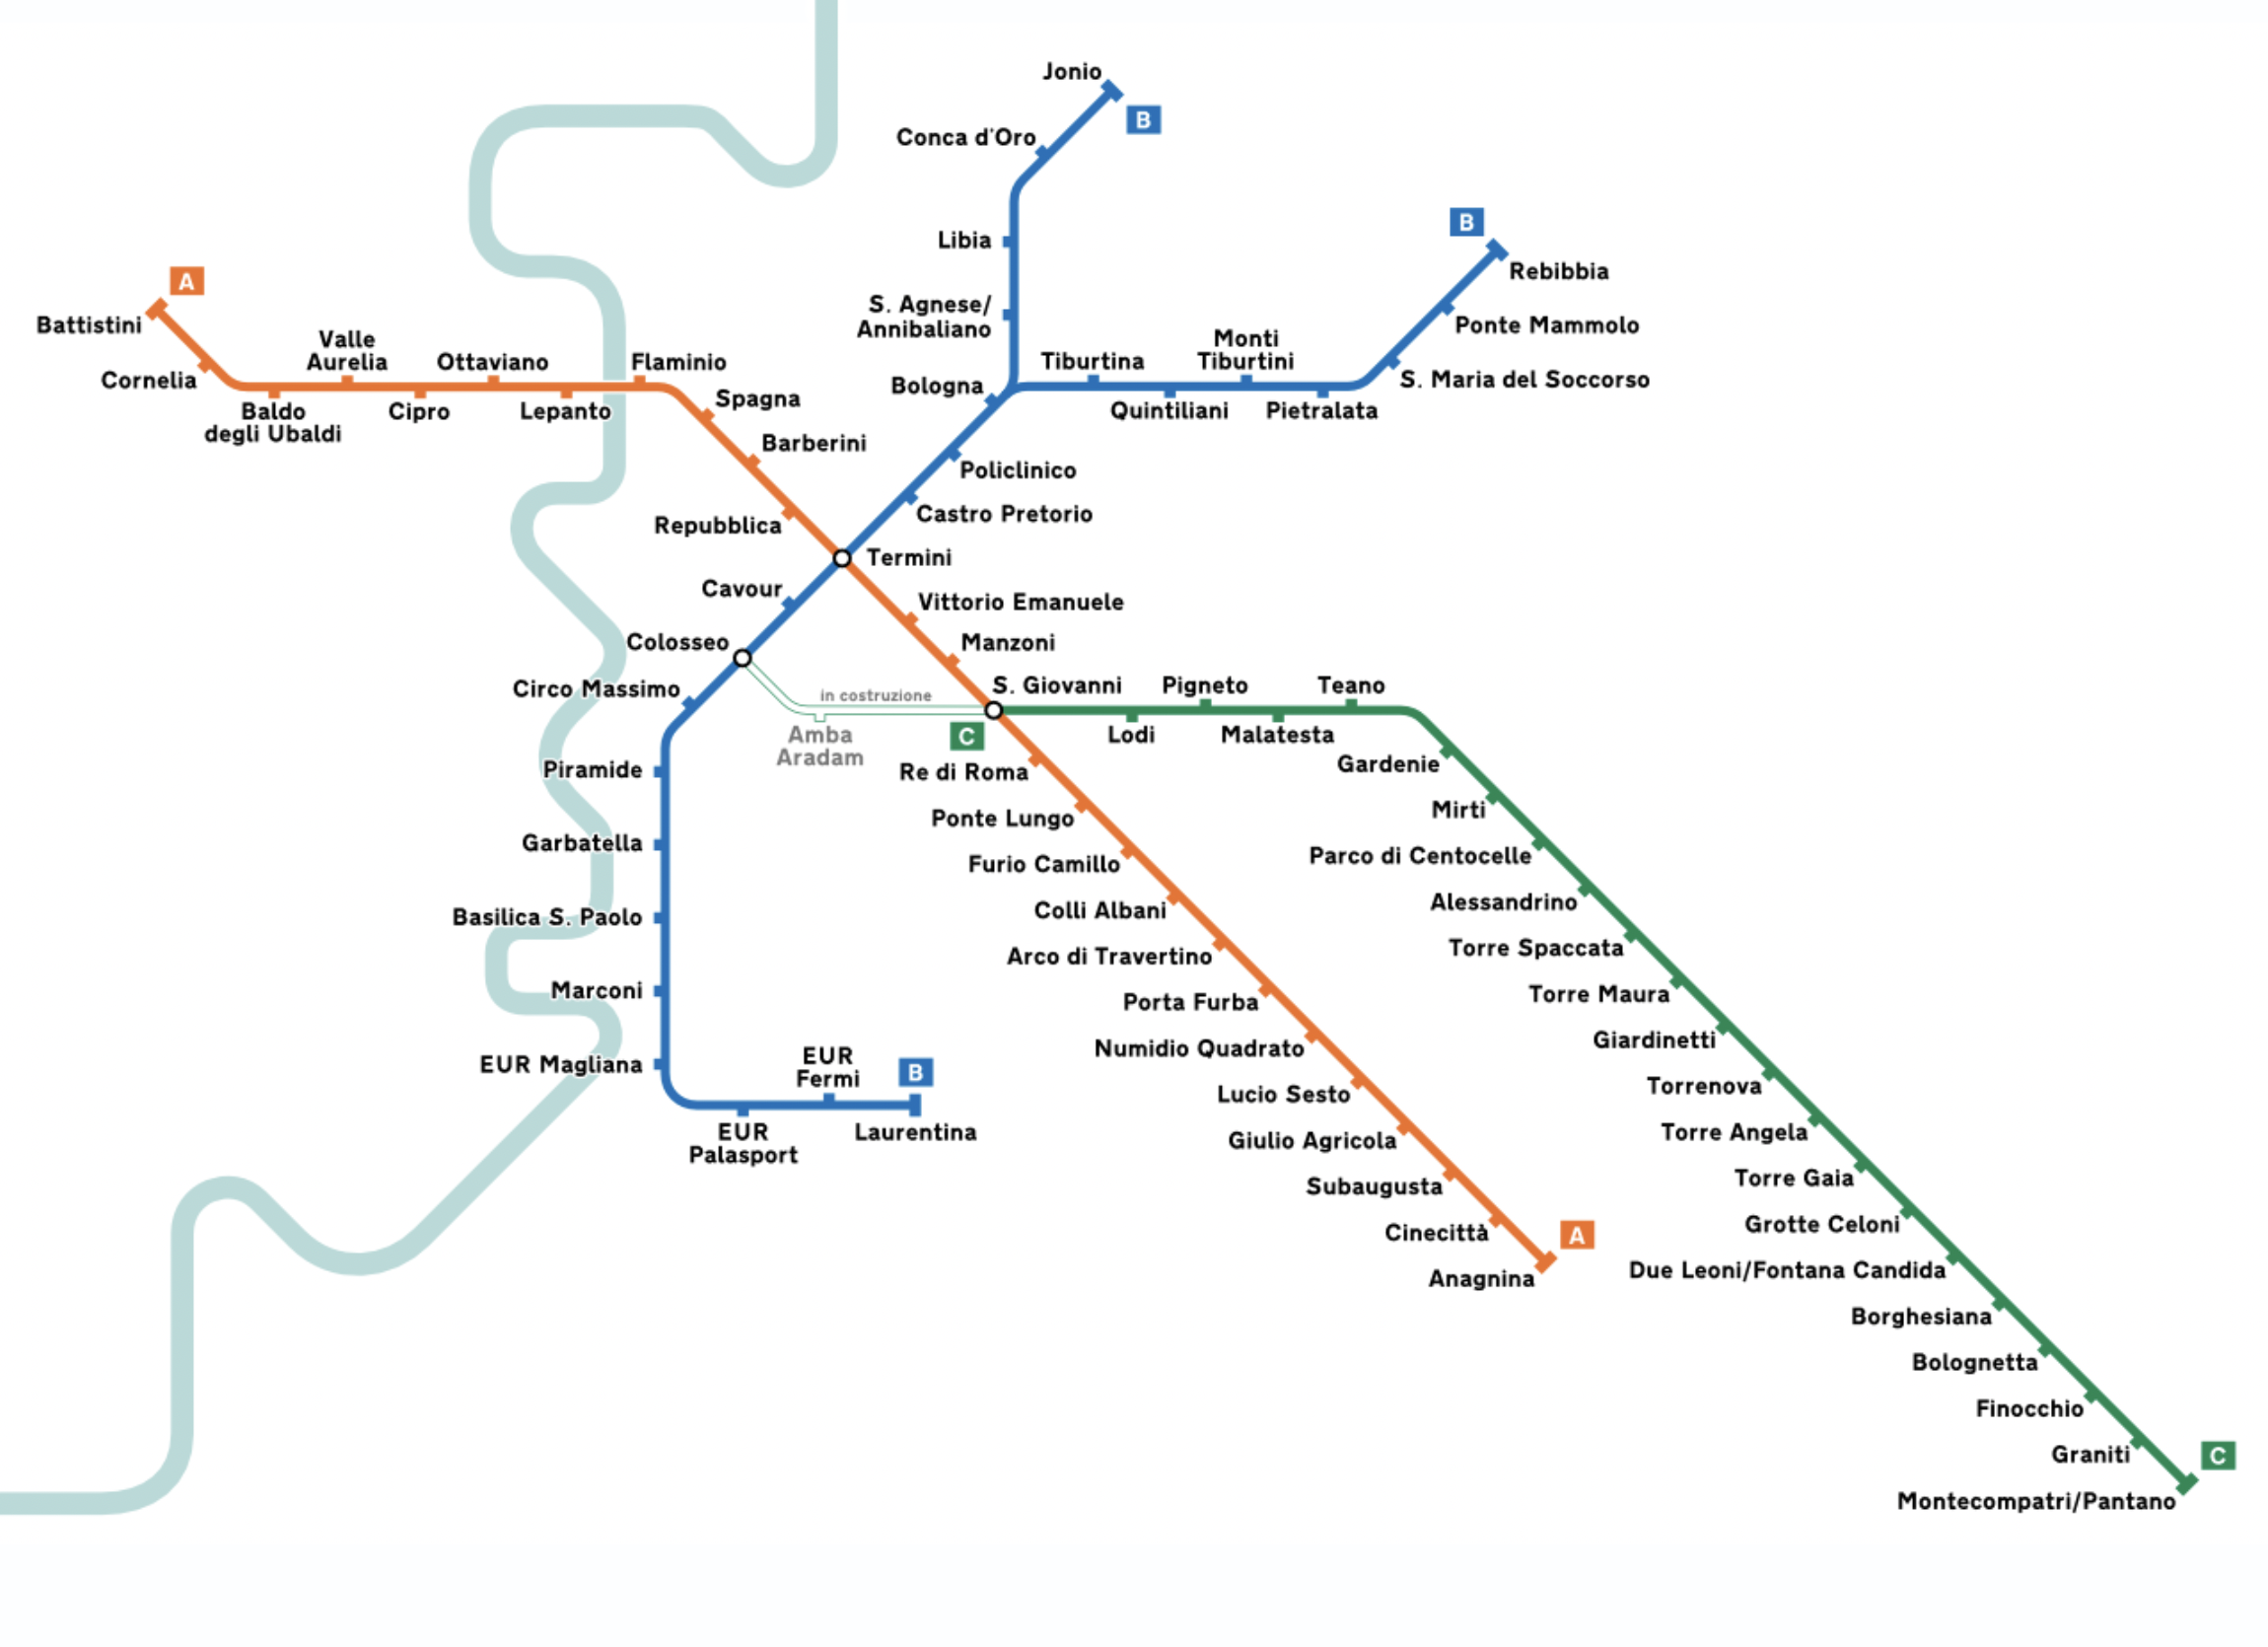 Схема римского метро. Источник: Википедия